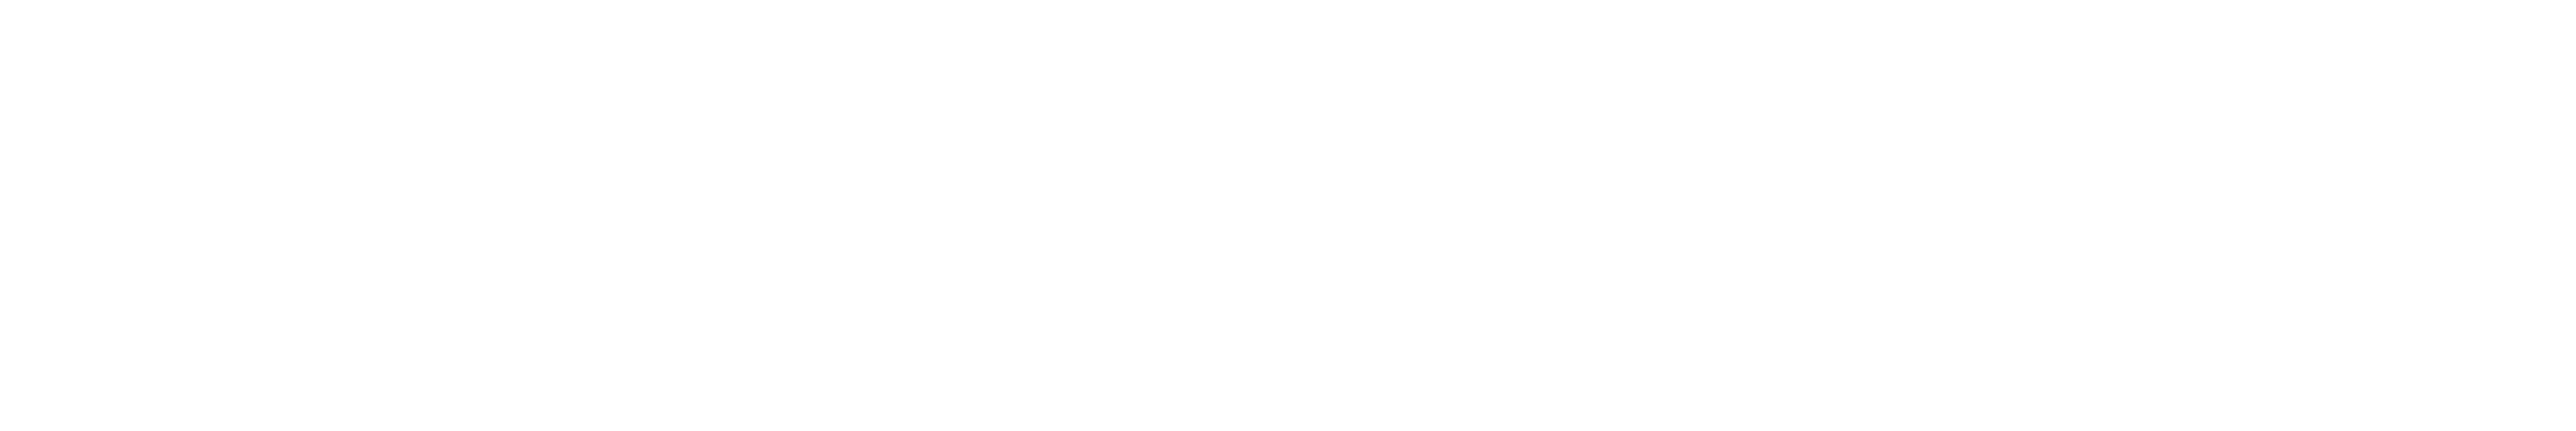 ArtistConnect Logo + Schrift